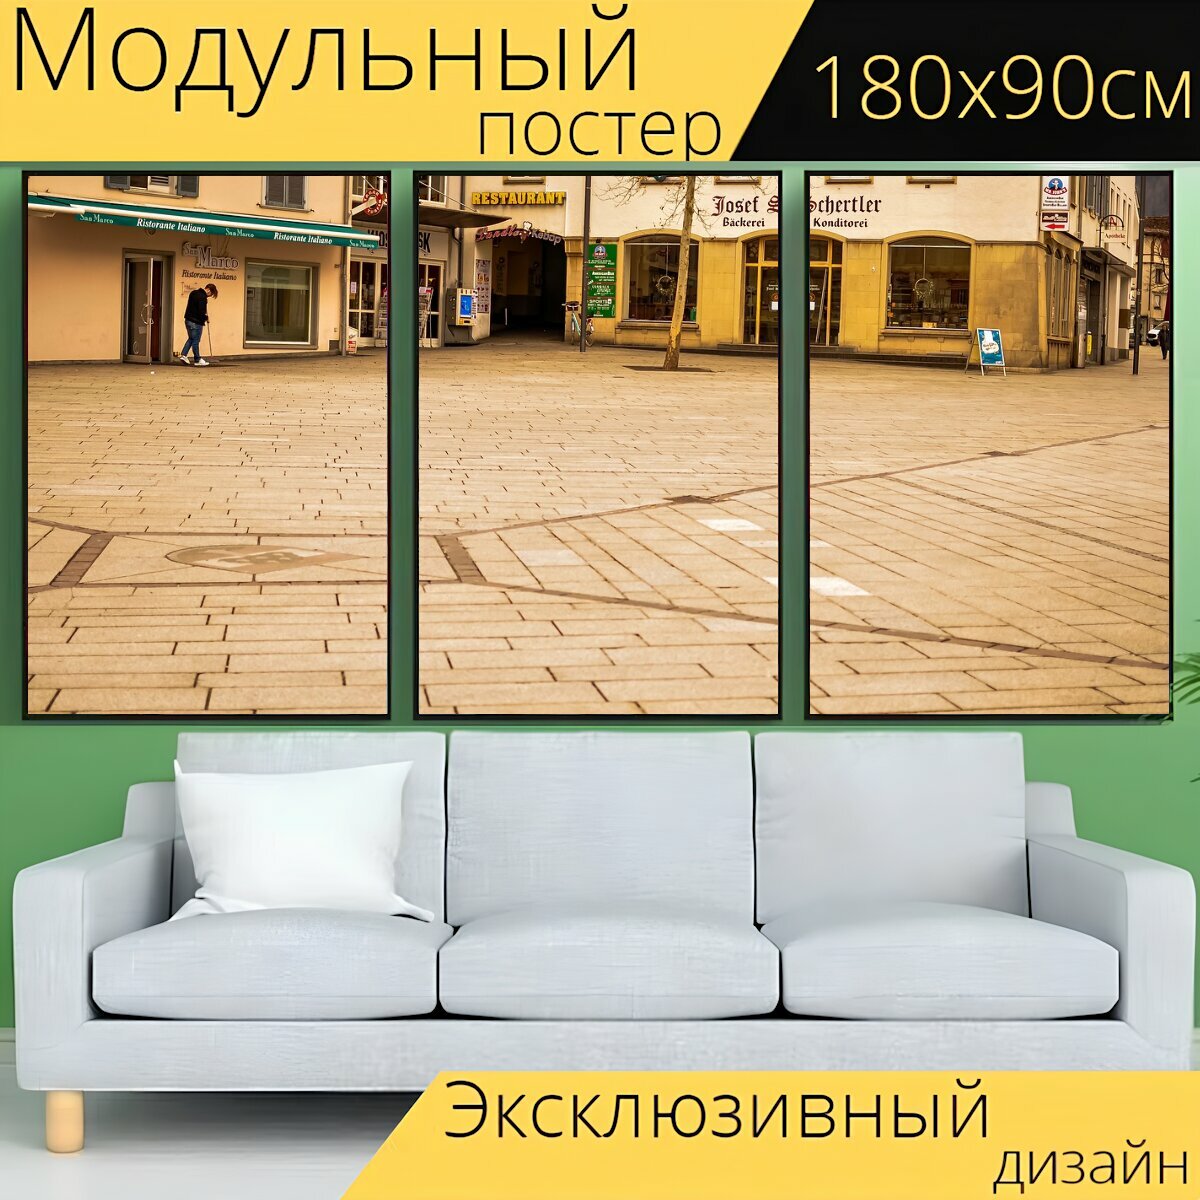 Модульный постер "Рынок, город, хранить" 180 x 90 см. для интерьера